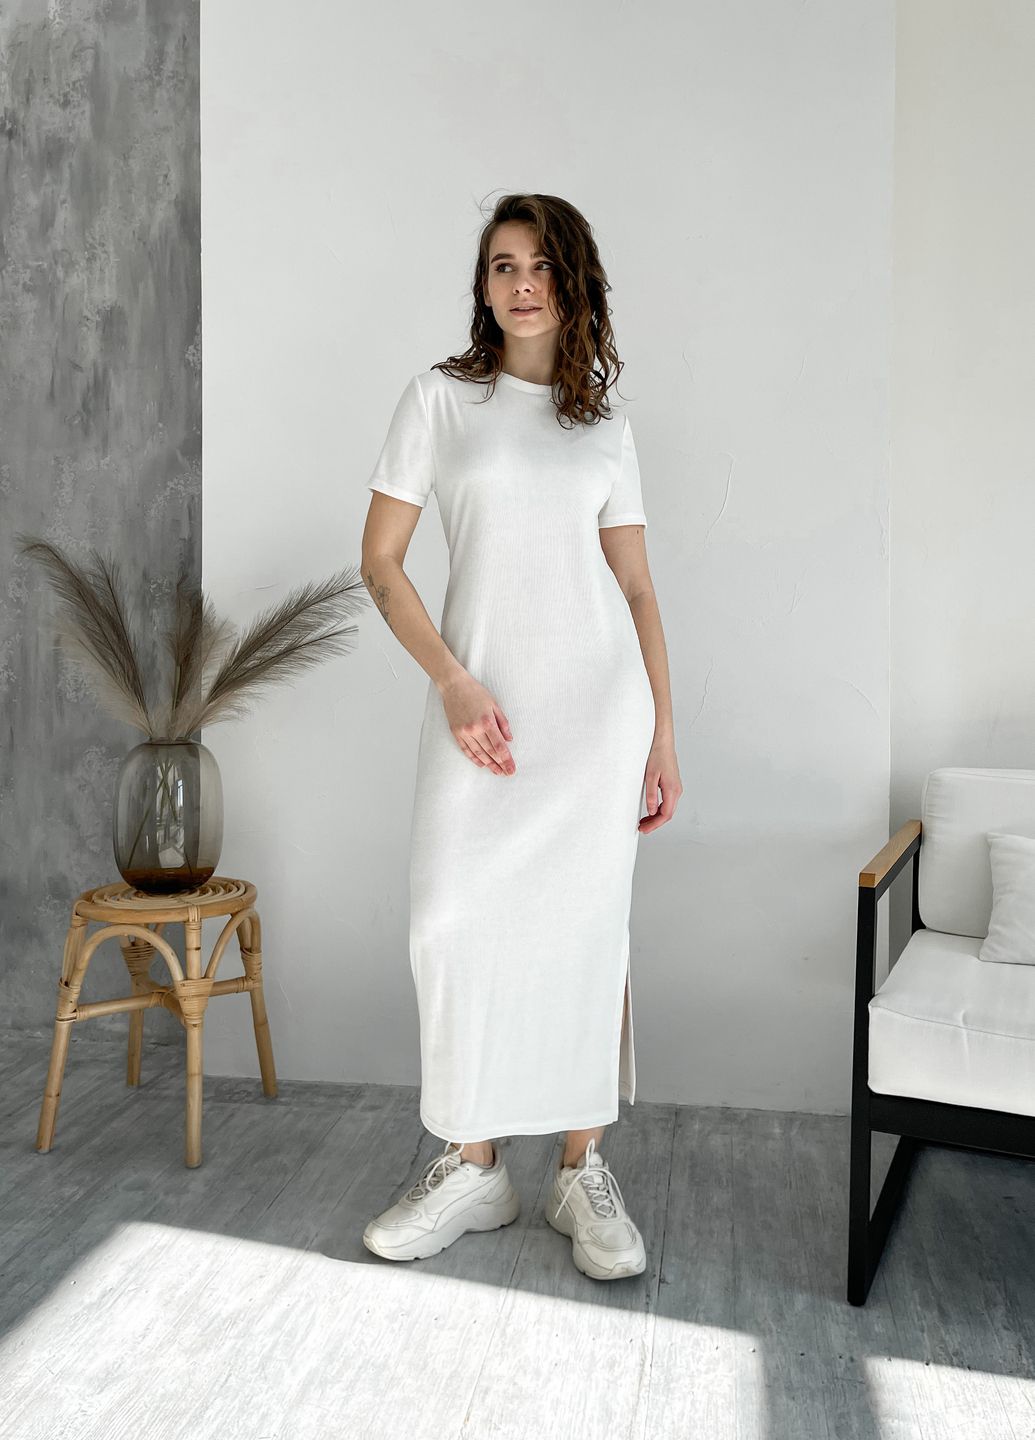 Купить Длинное платье-футболка в рубчик белое Merlini Кассо 700000126 размер 46-48 (L-XL) в интернет-магазине